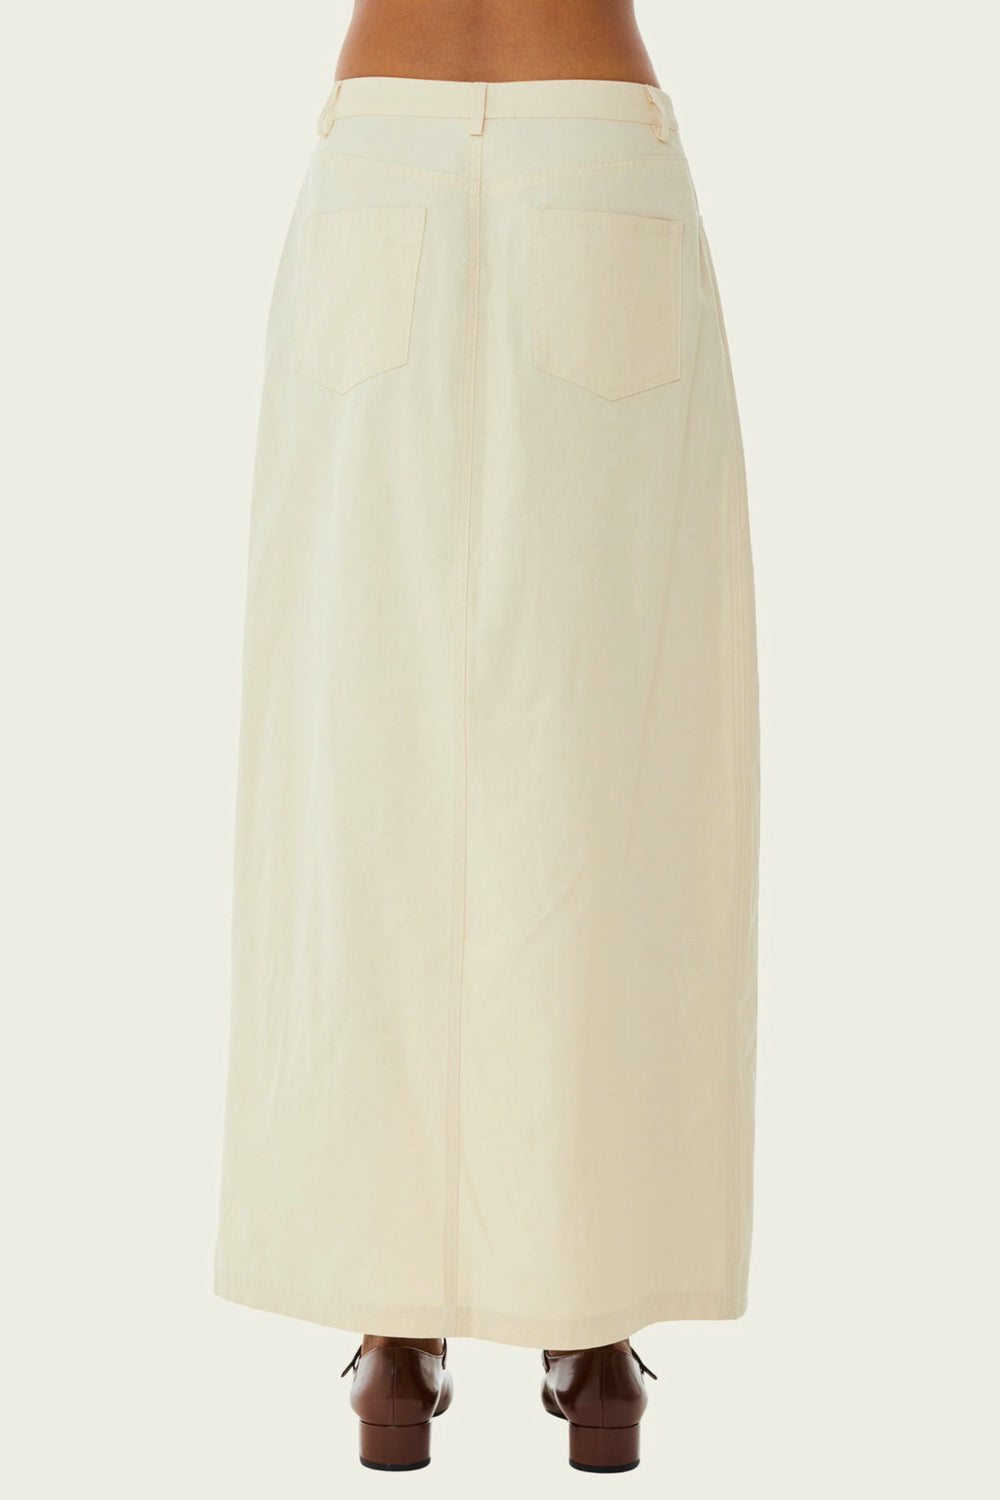 Antique White Khaki Midi Skirt